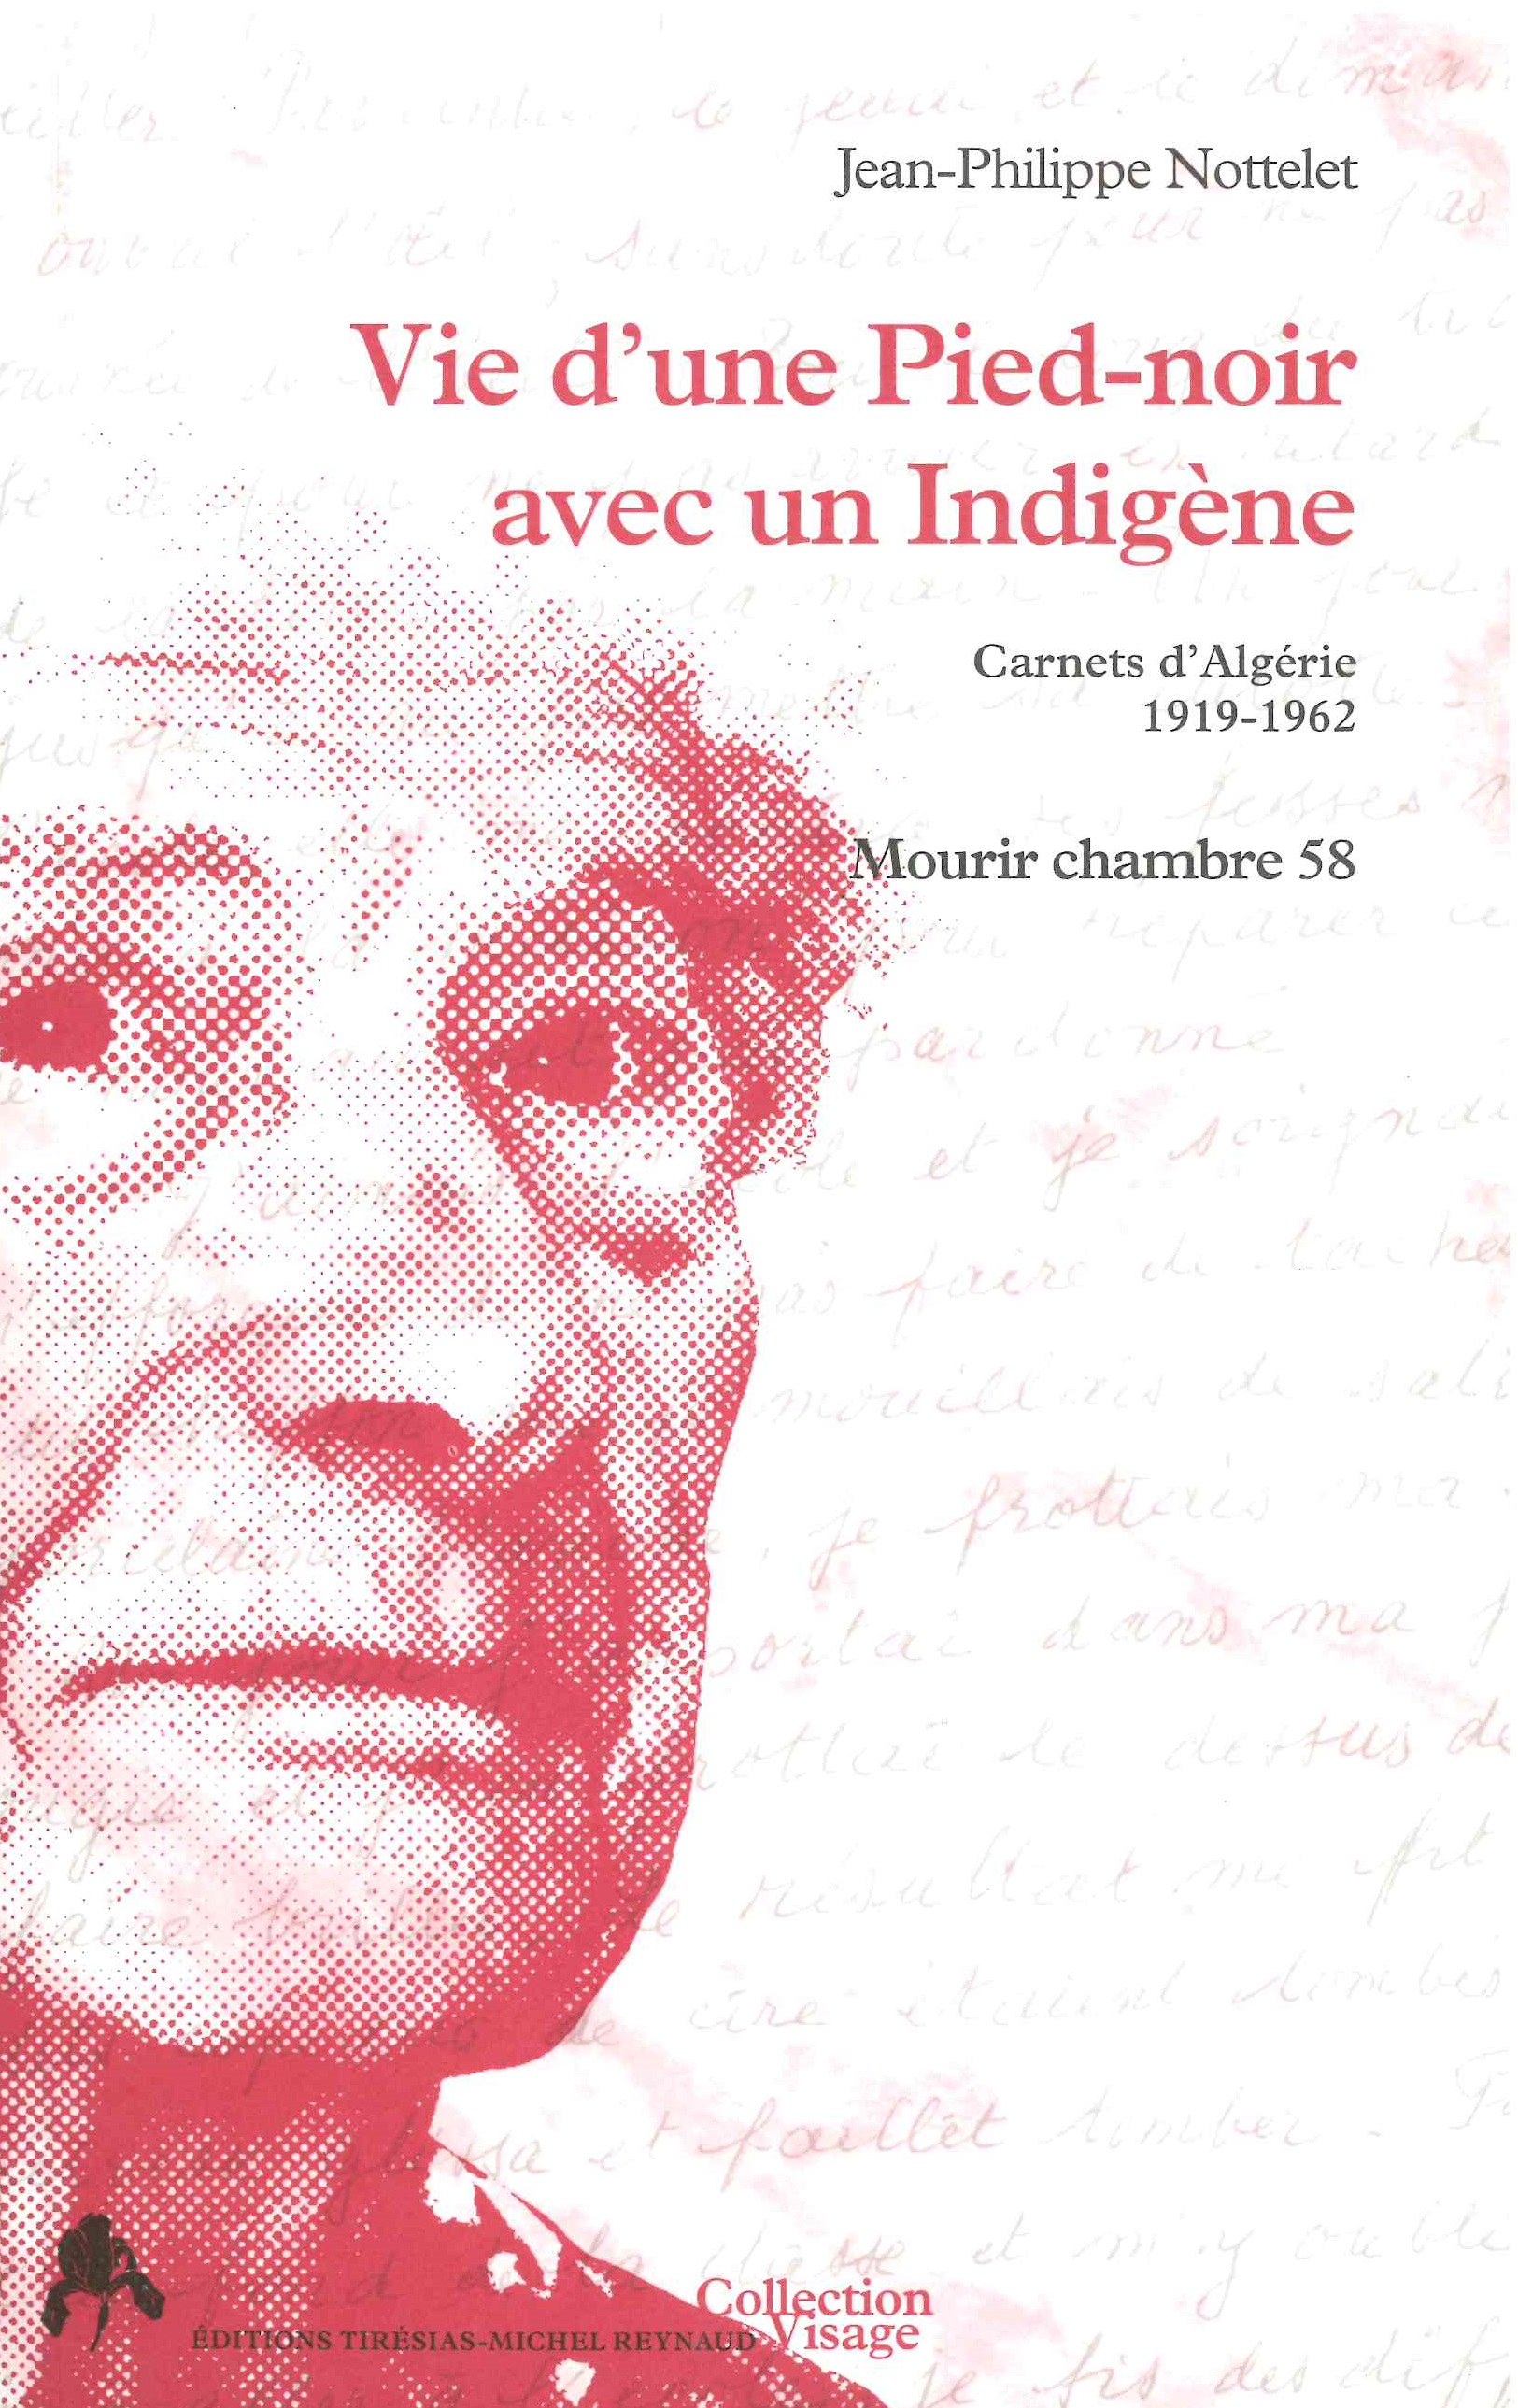 Nottelet (Jean-Philippe), Vie d’une pied-noir avec un indigène. Carnets d’Algérie, 1919-1962, Tiresias 